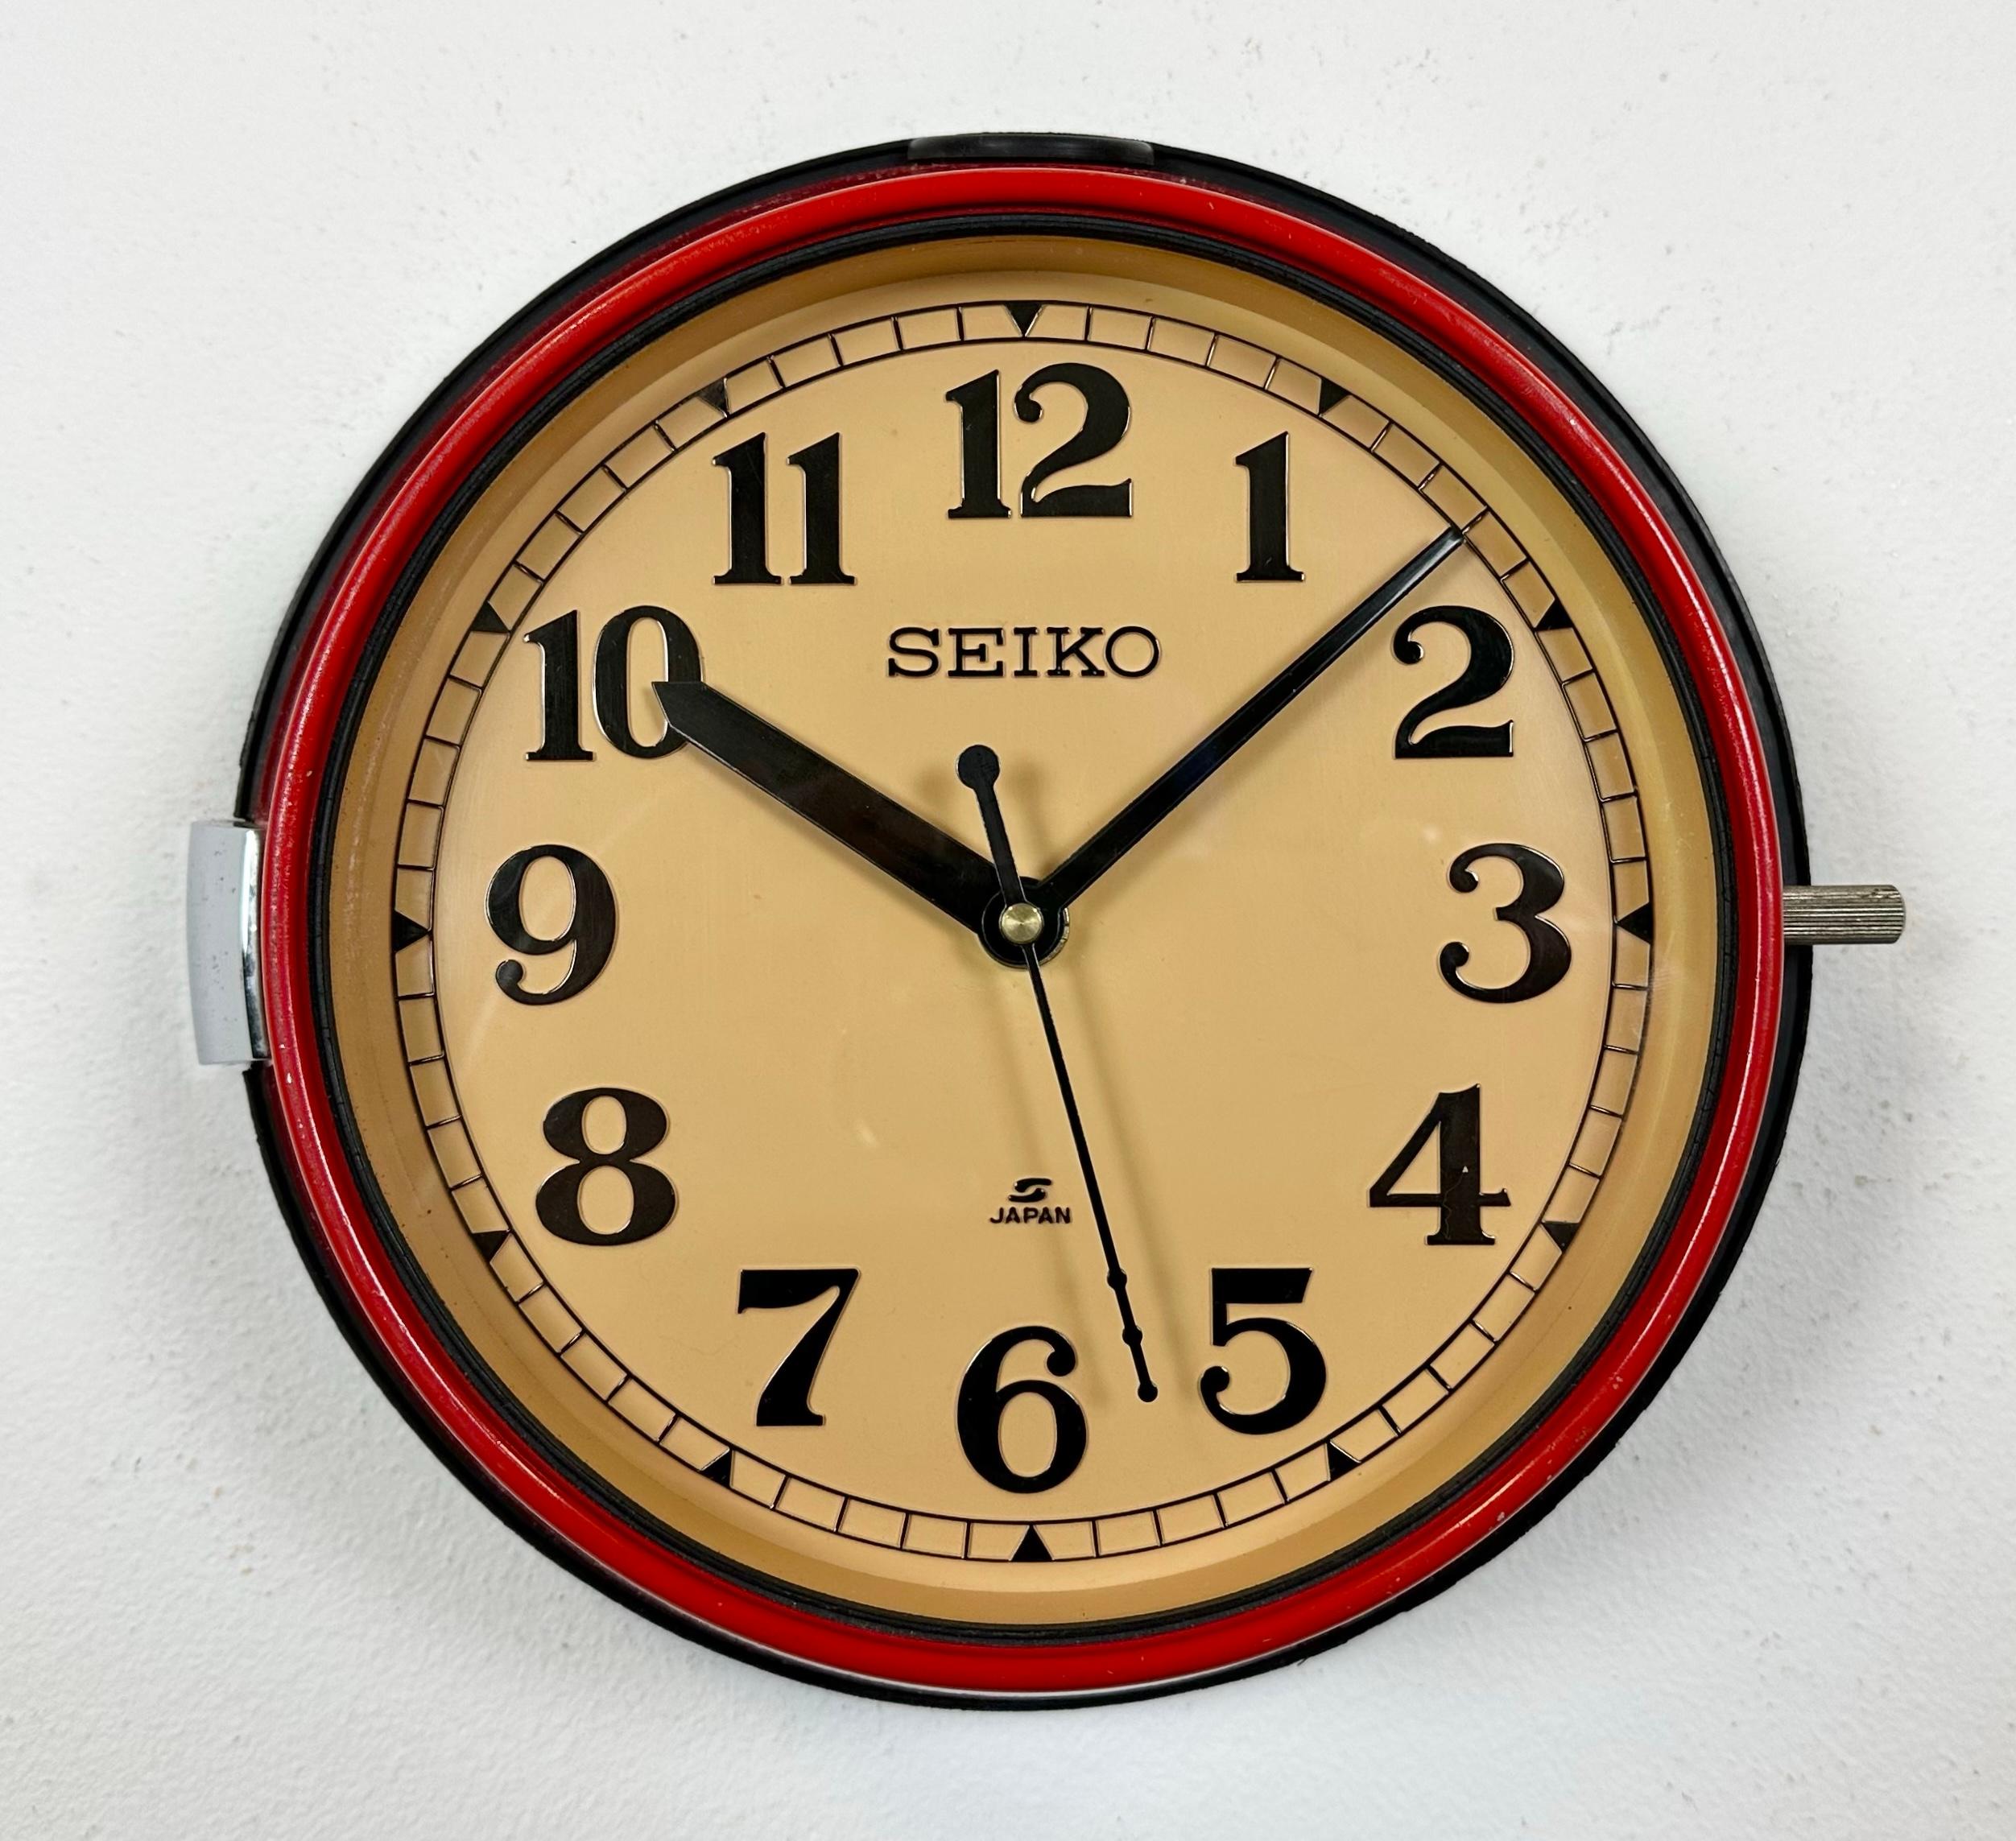 Vintage Seiko Marine-Nebenuhr, entworfen in den 1970er Jahren und produziert bis in die 1990er Jahre. Diese Uhren wurden auf großen japanischen Tankern und Frachtschiffen eingesetzt. Sie hat einen roten Metallrahmen, ein Kunststoffzifferblatt und